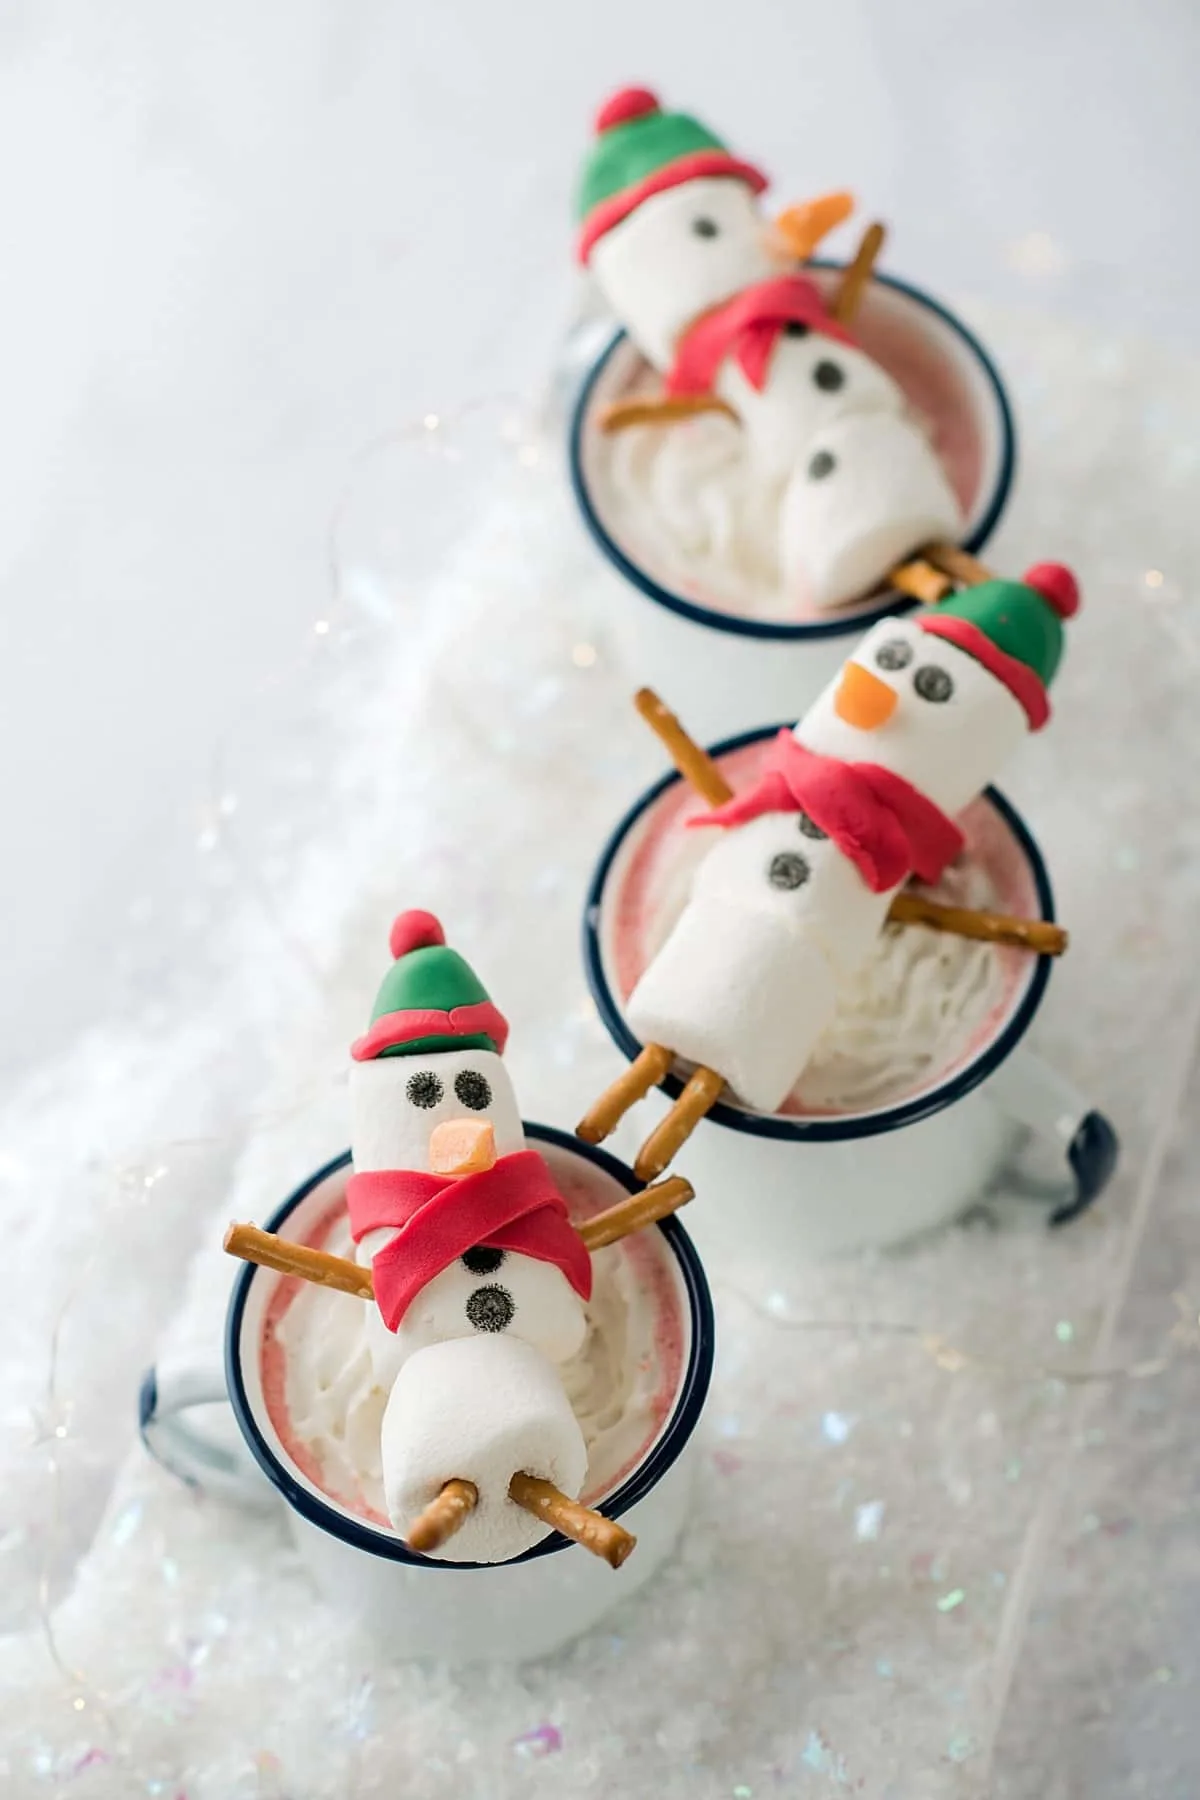 https://bakedbree.com/wp-content/uploads/2019/01/snowman-hot-chocolate-47.jpg.webp